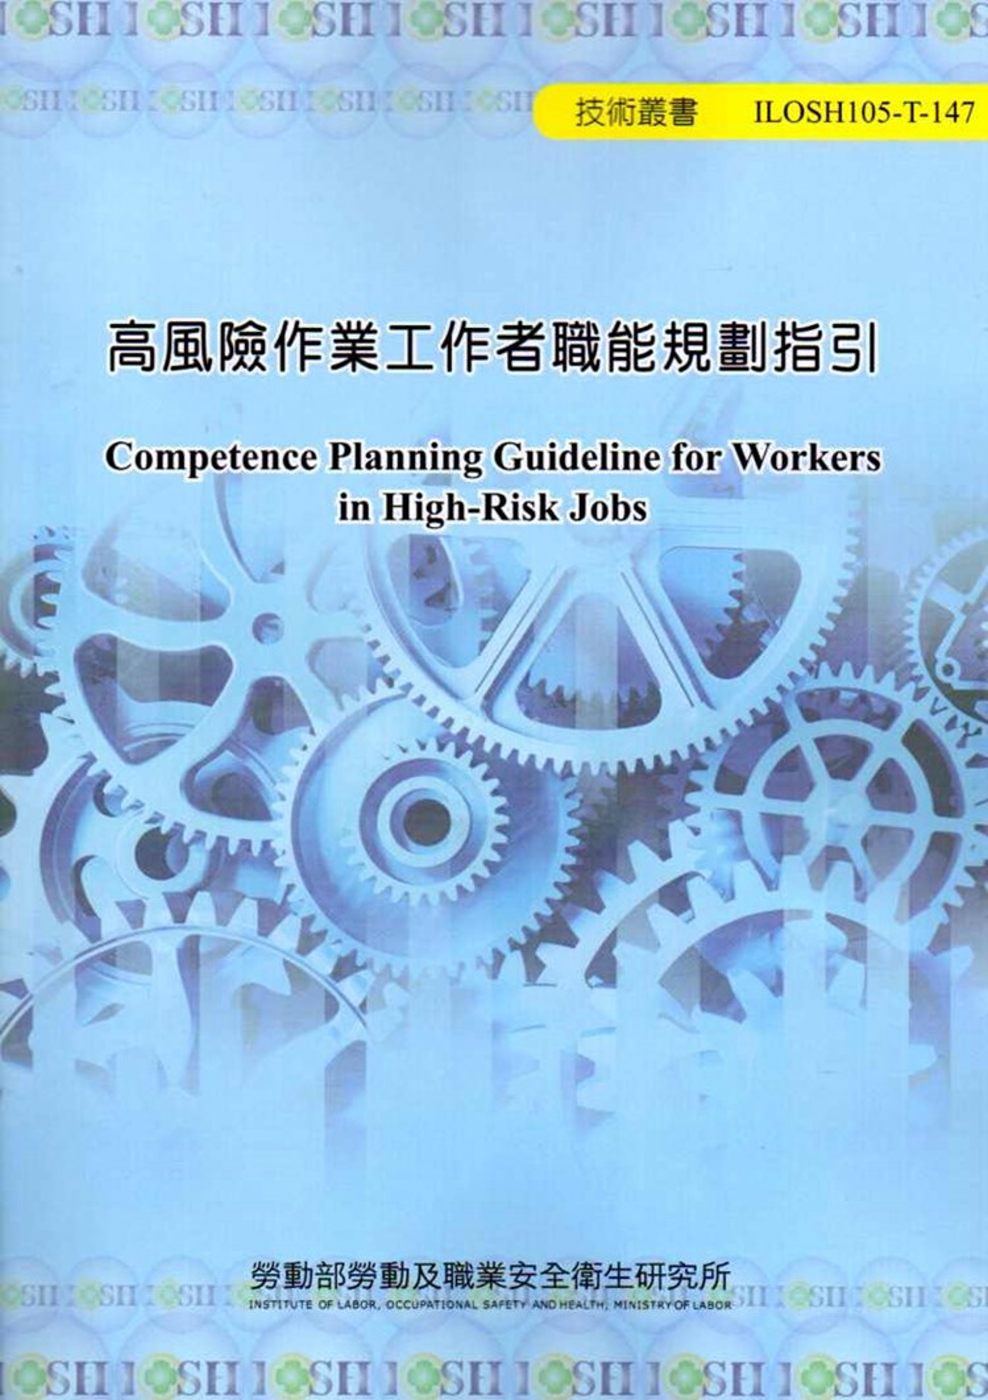 高風險作業工作者職能規劃指引